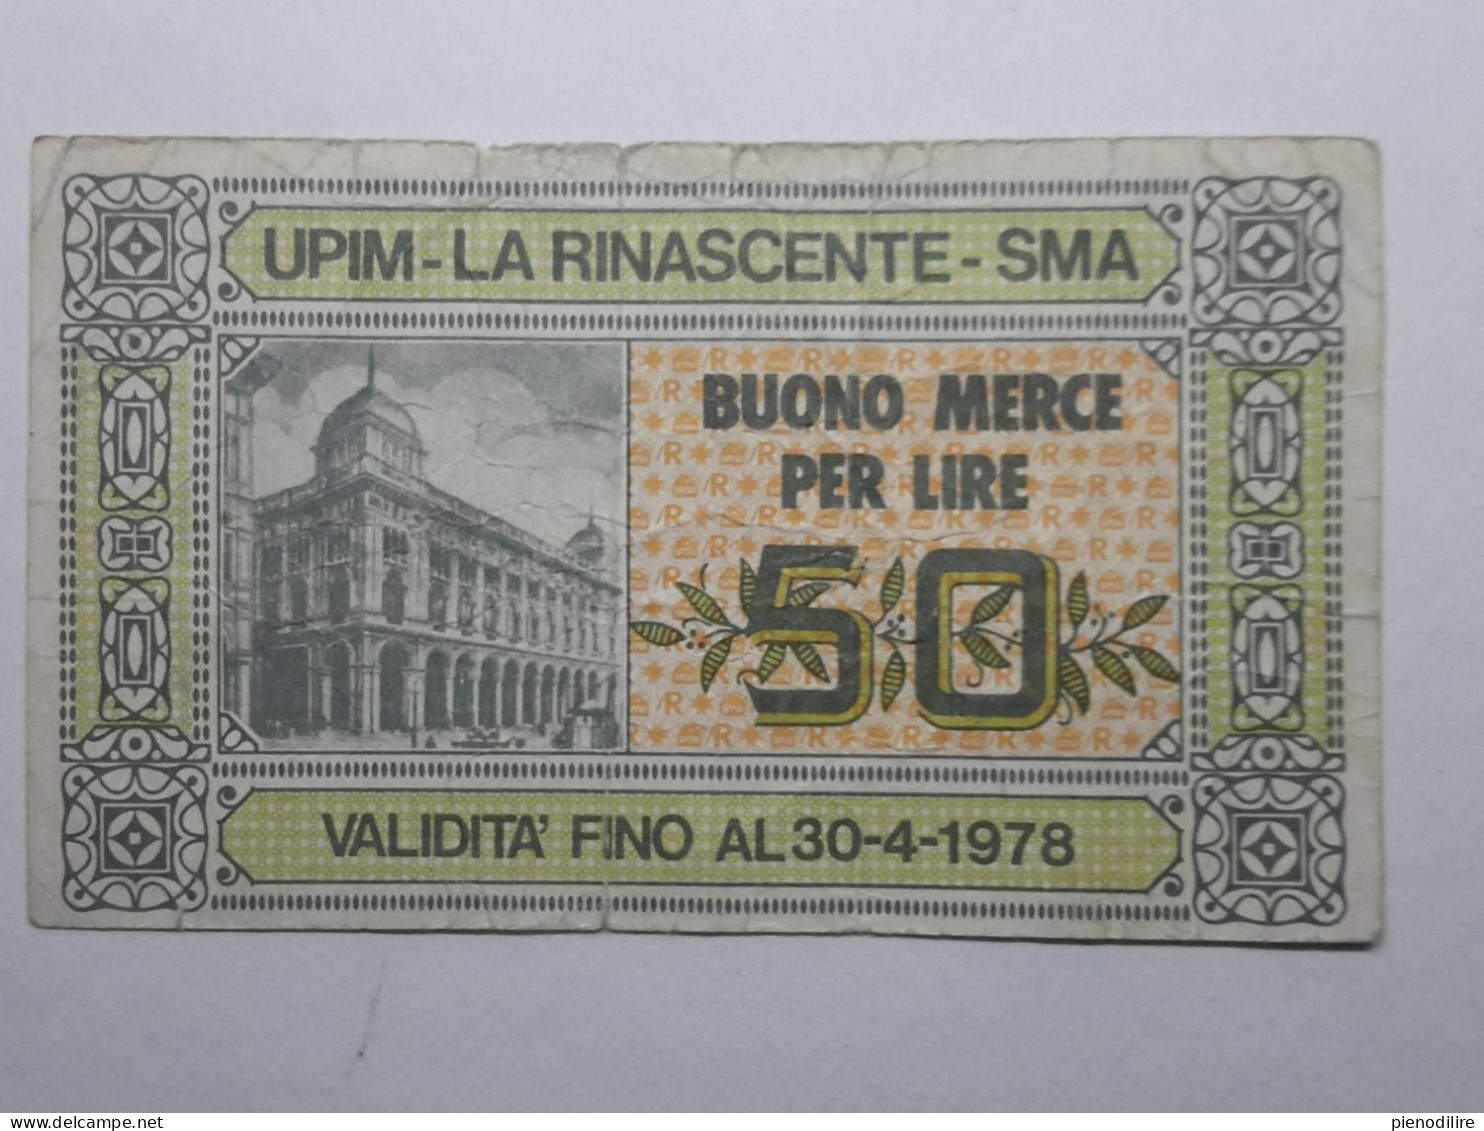 BANCONOTA BUONO D' ACQUISTO MERCE FINO A 50 LIRE UPIM LA RINASCENTE 1978 (A.10) - [10] Cheques Y Mini-cheques